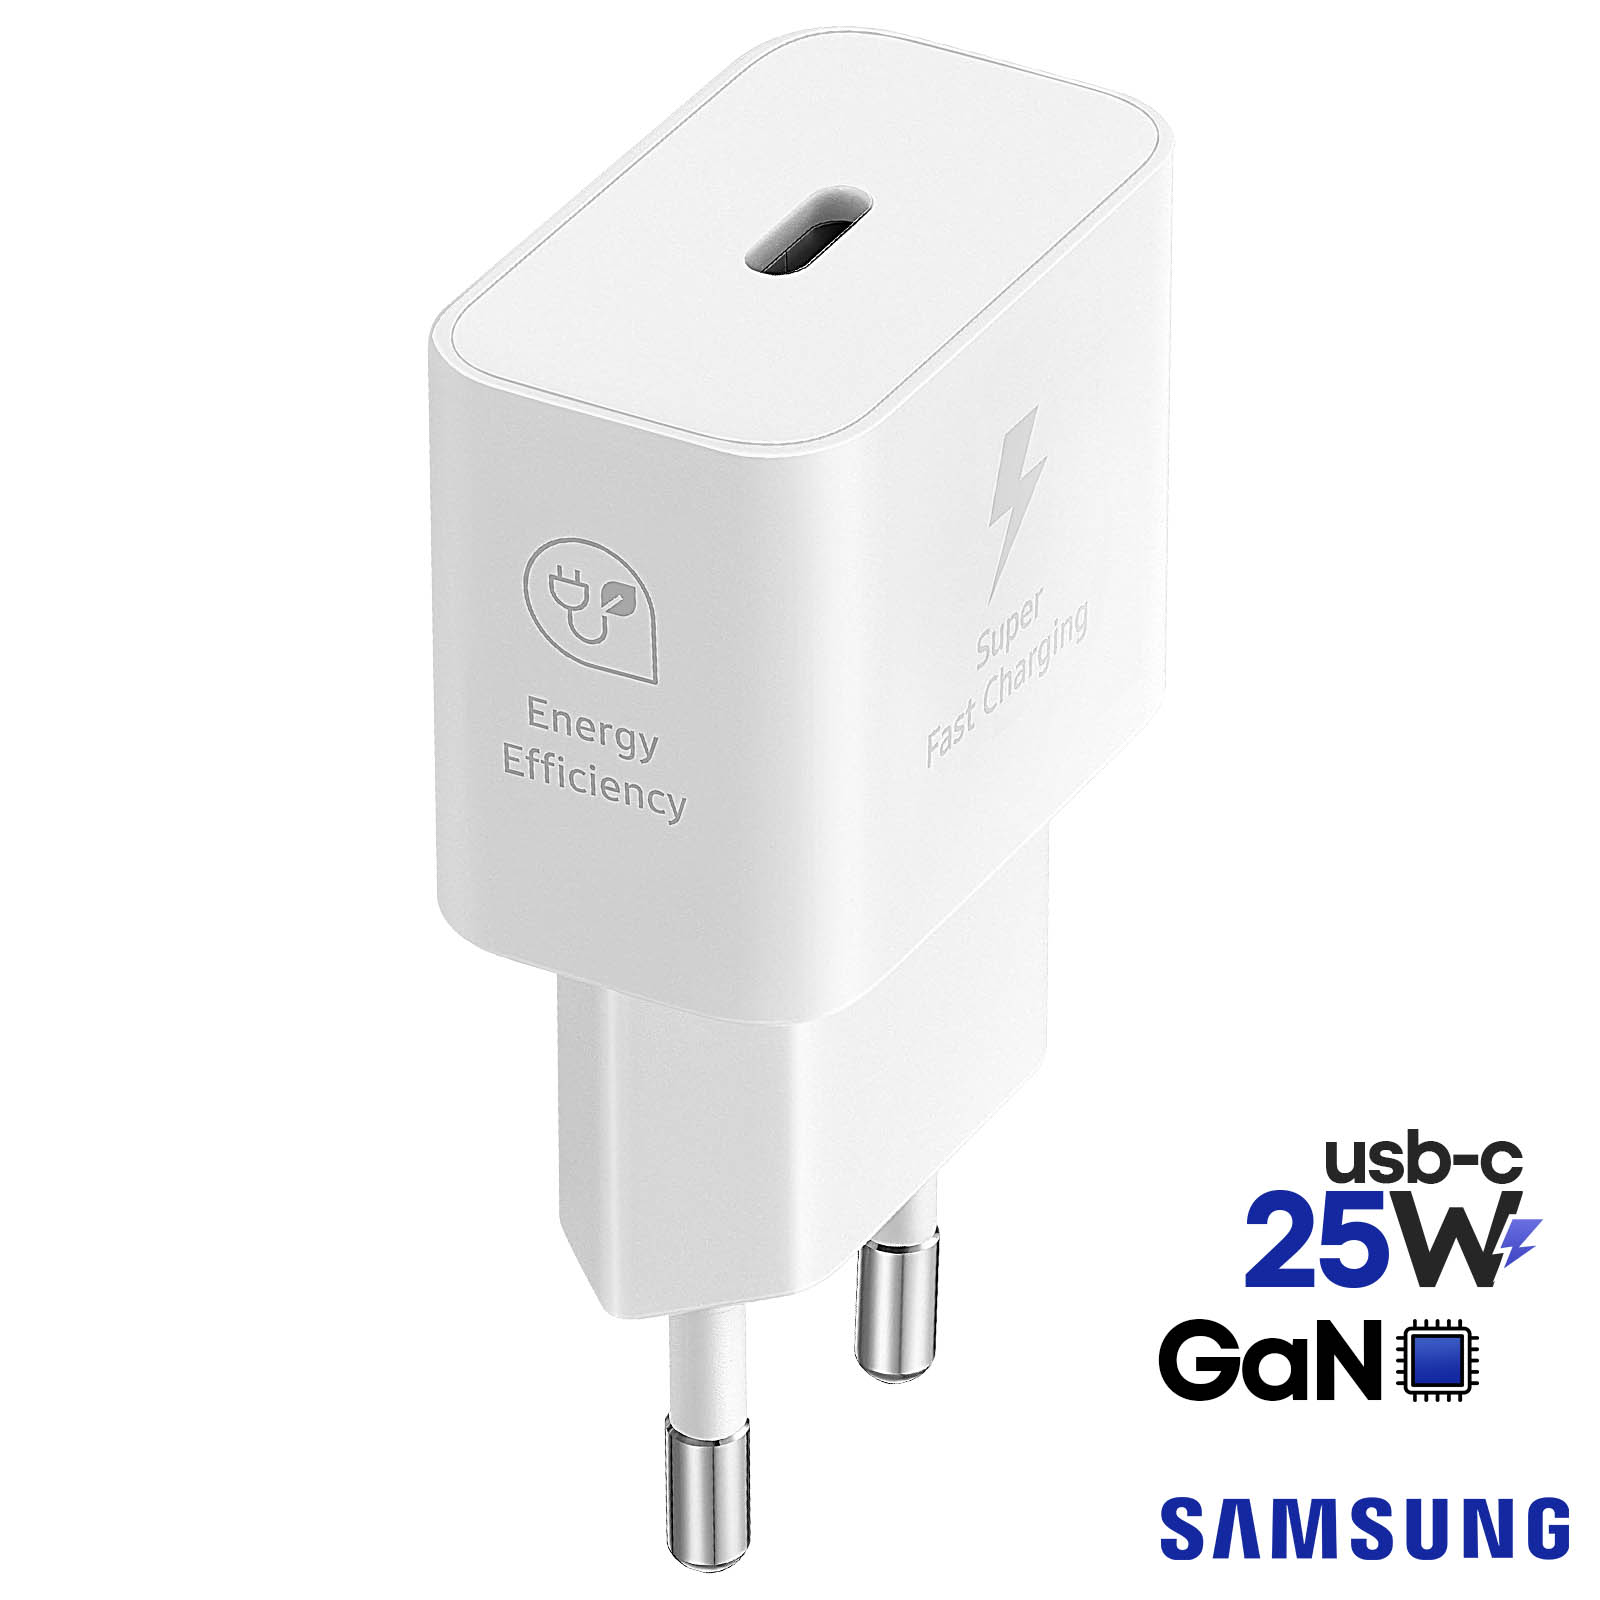 Chargeur secteur USB-C 25W, Technologie GaN - Produit officiel Samsung,  Blanc